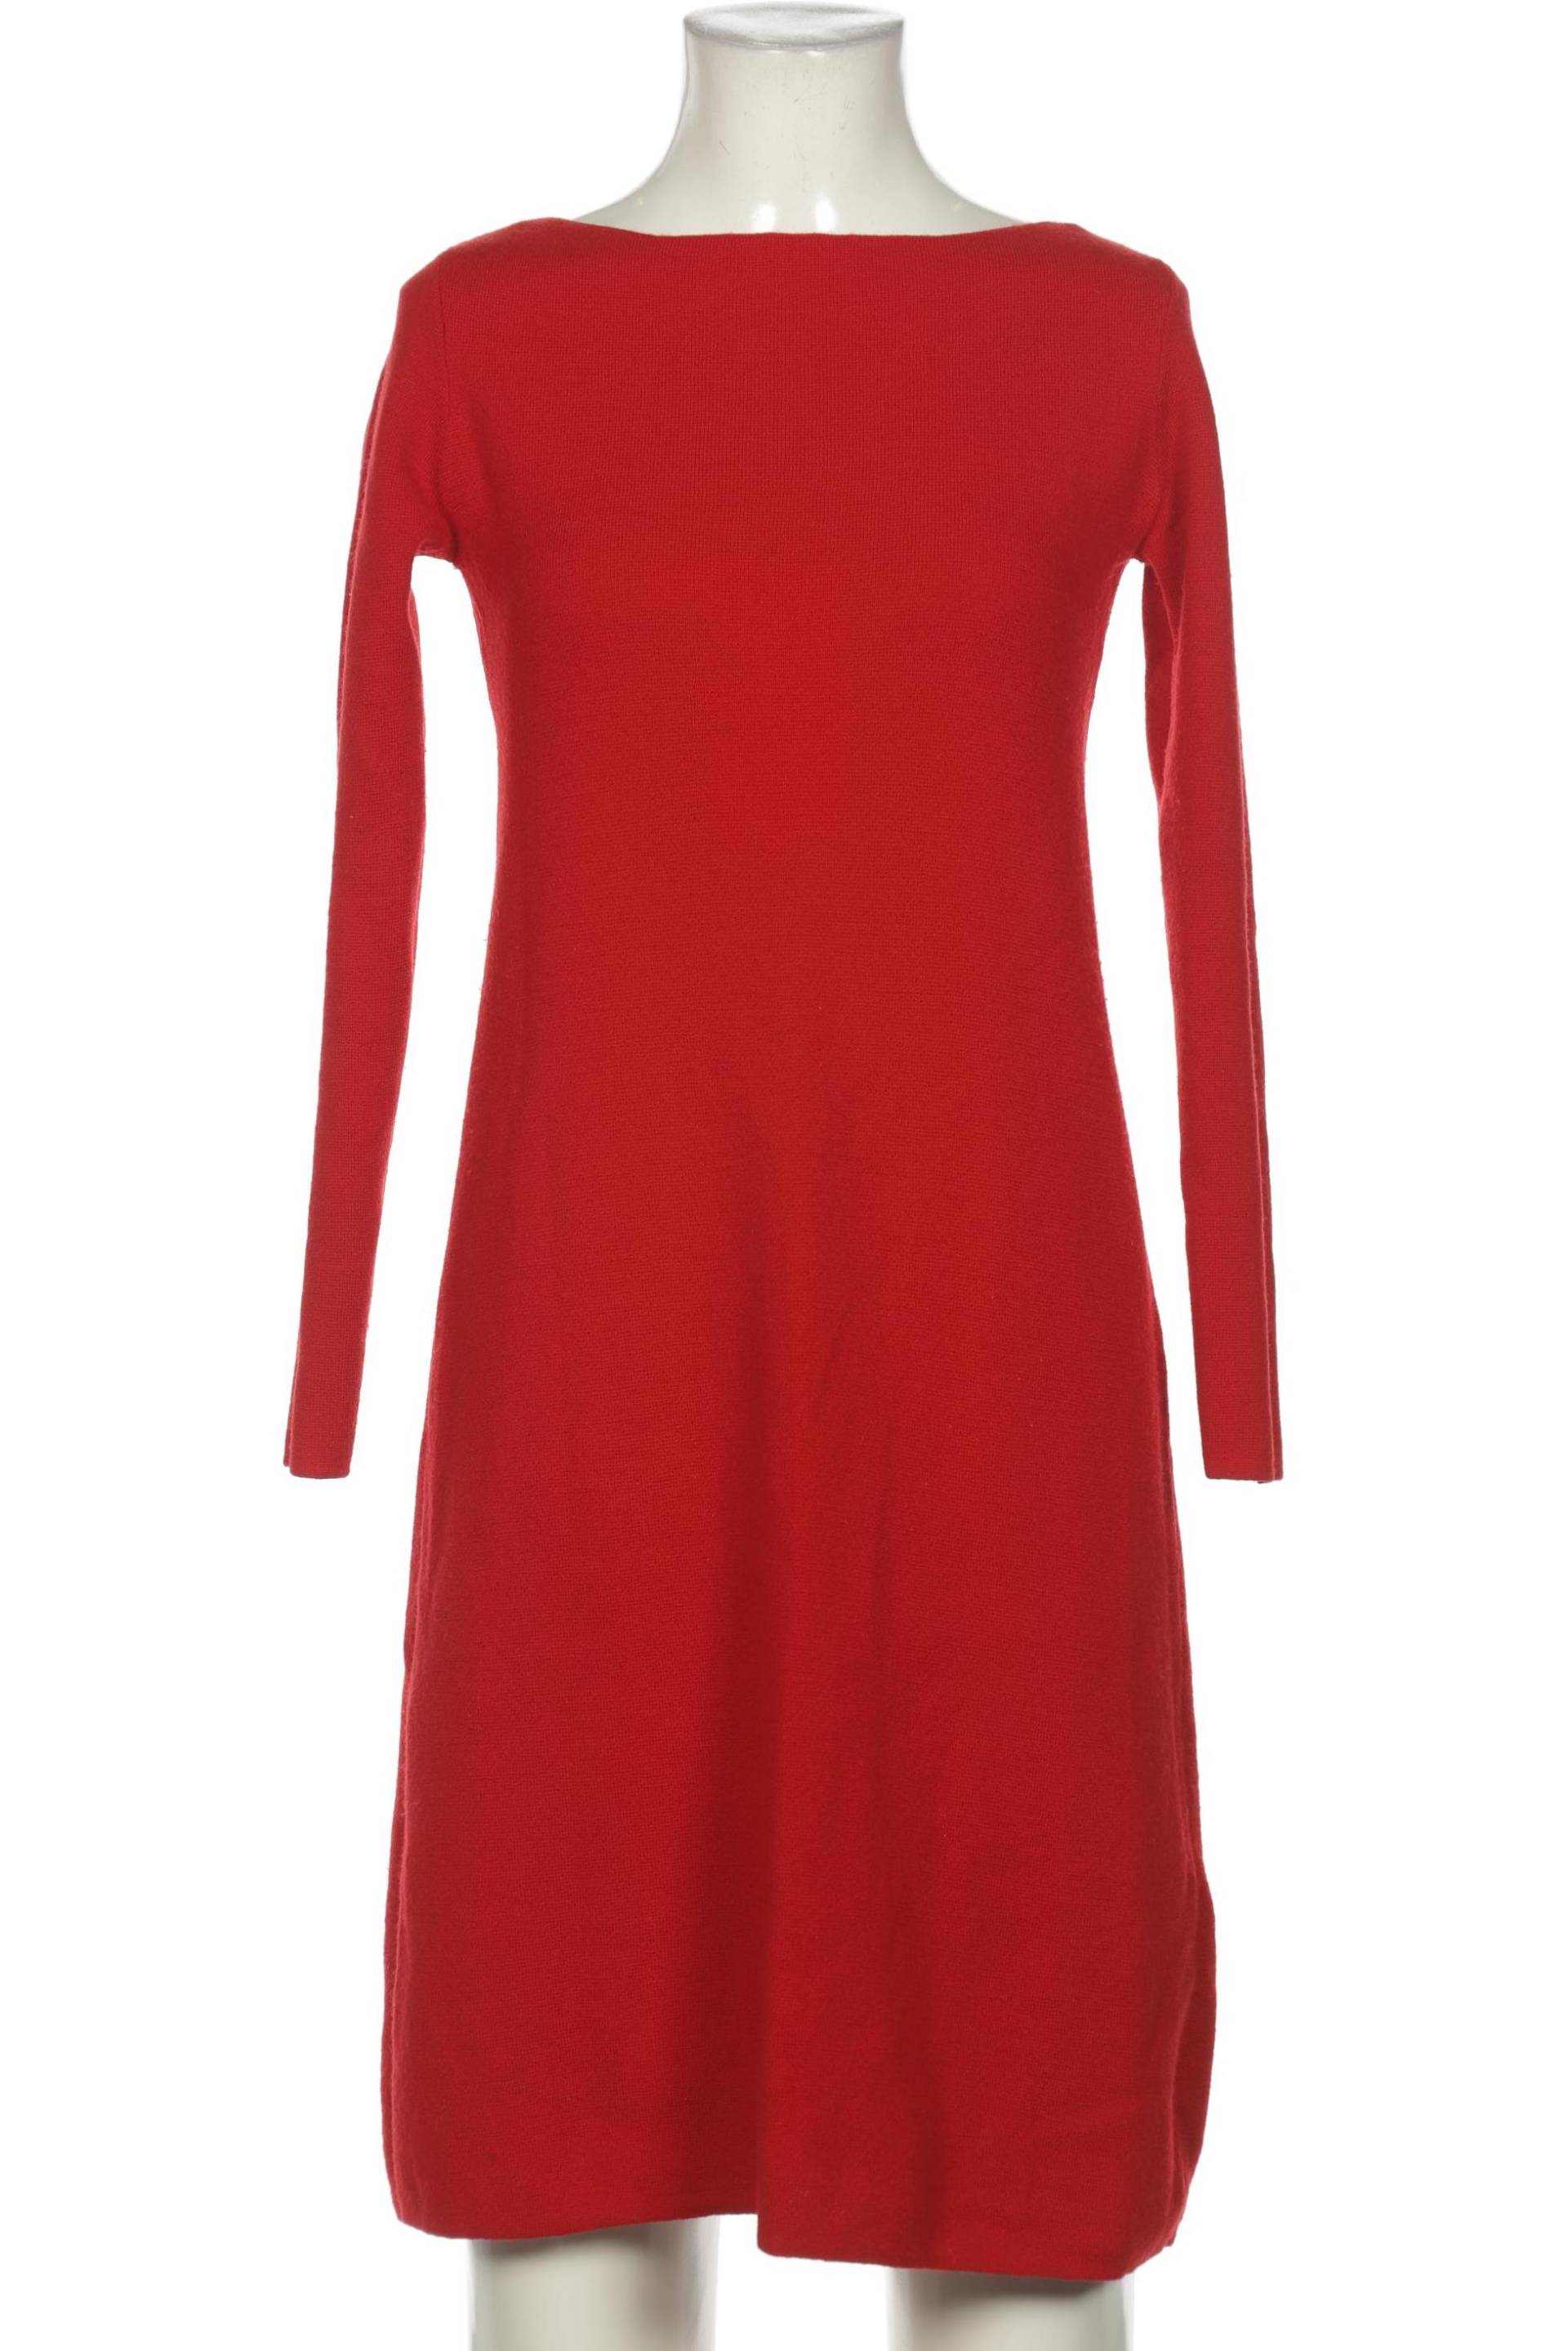 Hallhuber Damen Kleid, rot von Hallhuber